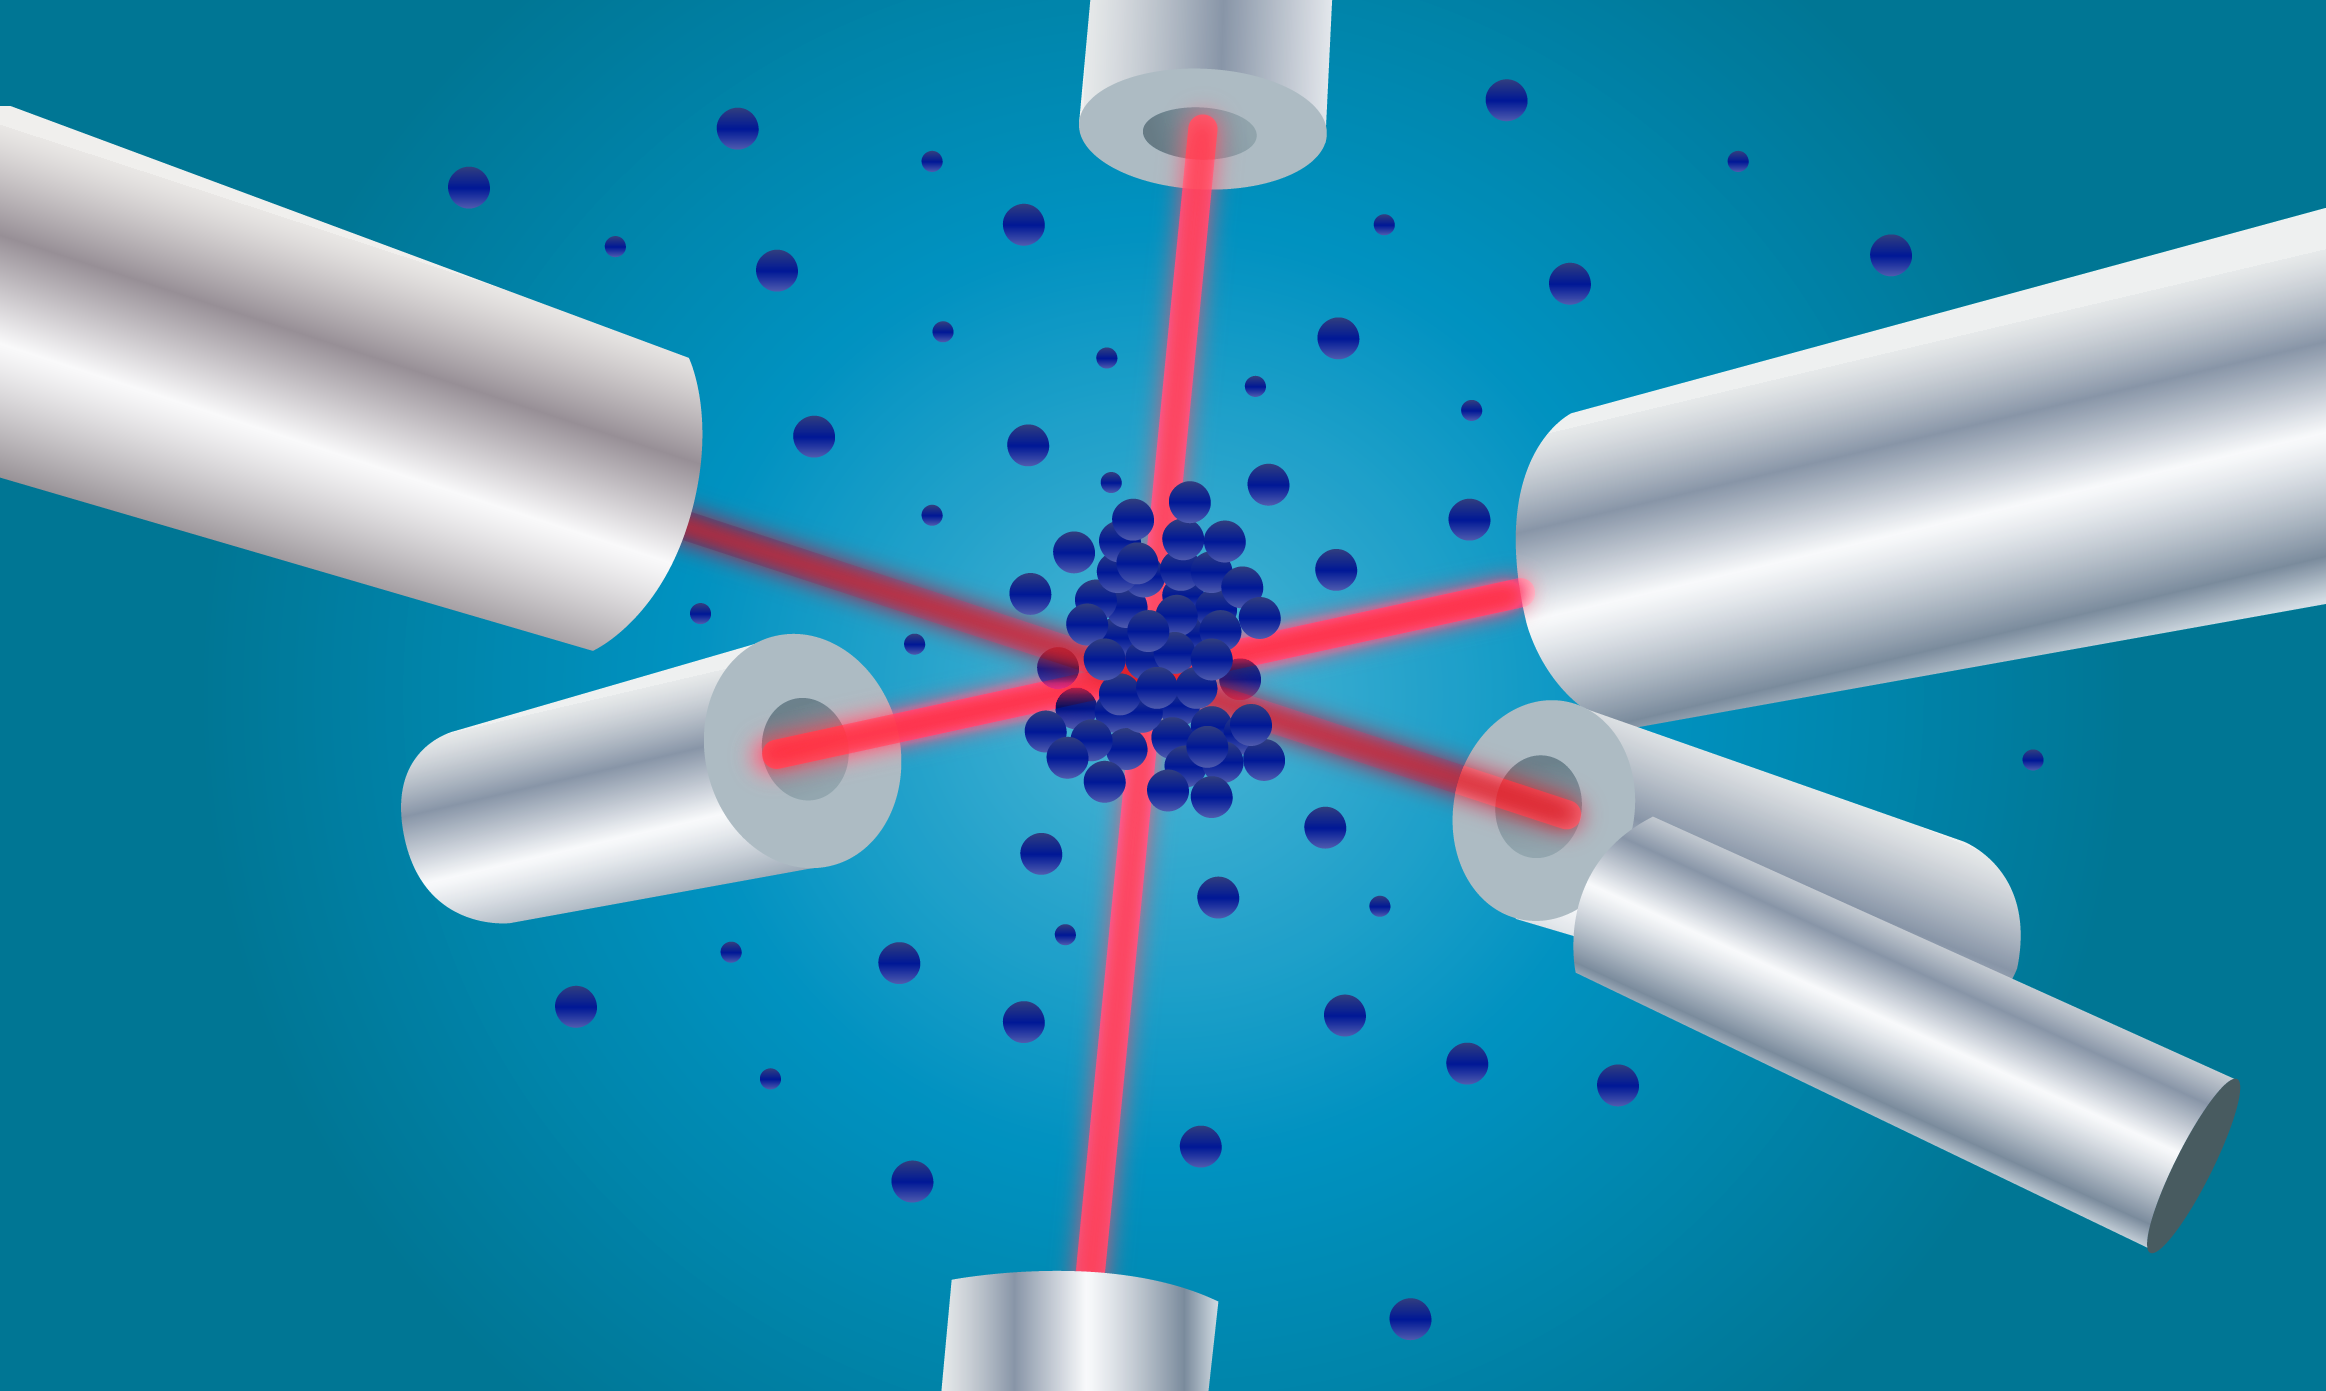 Moléculas expuestas a luz láser para disminuir su temperatura